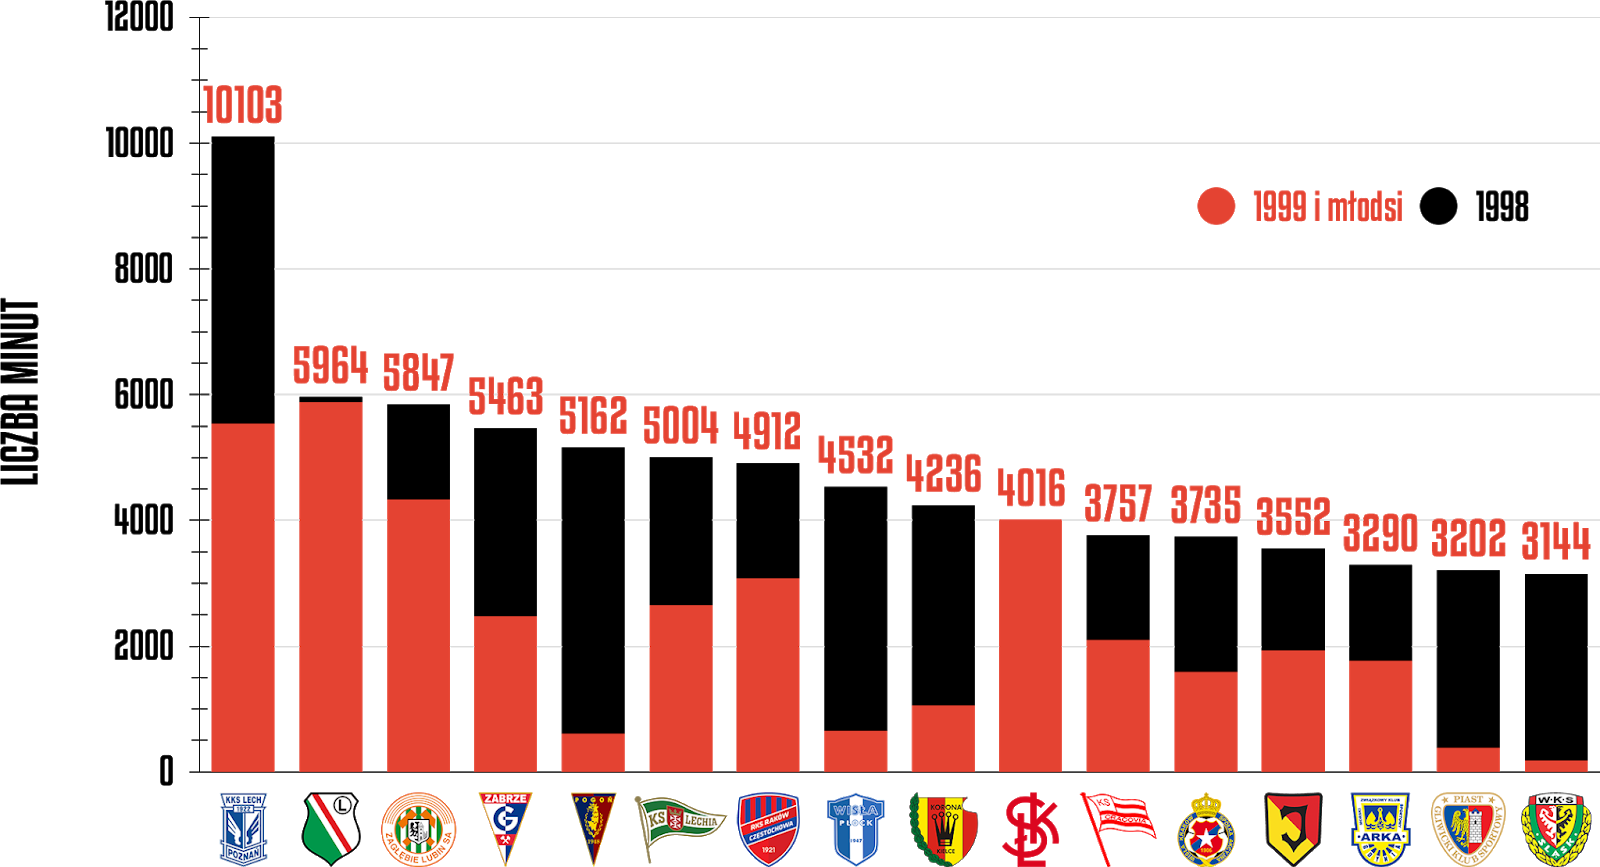 Klasyfikacja klubów pod względem rozegranych minut przez młodzieżowców po 34 kolejkach PKO Ekstraklasy<br><br>Źródło: Opracowanie własne na podstawie ekstrastats.pl<br><br>graf. Bartosz Urban